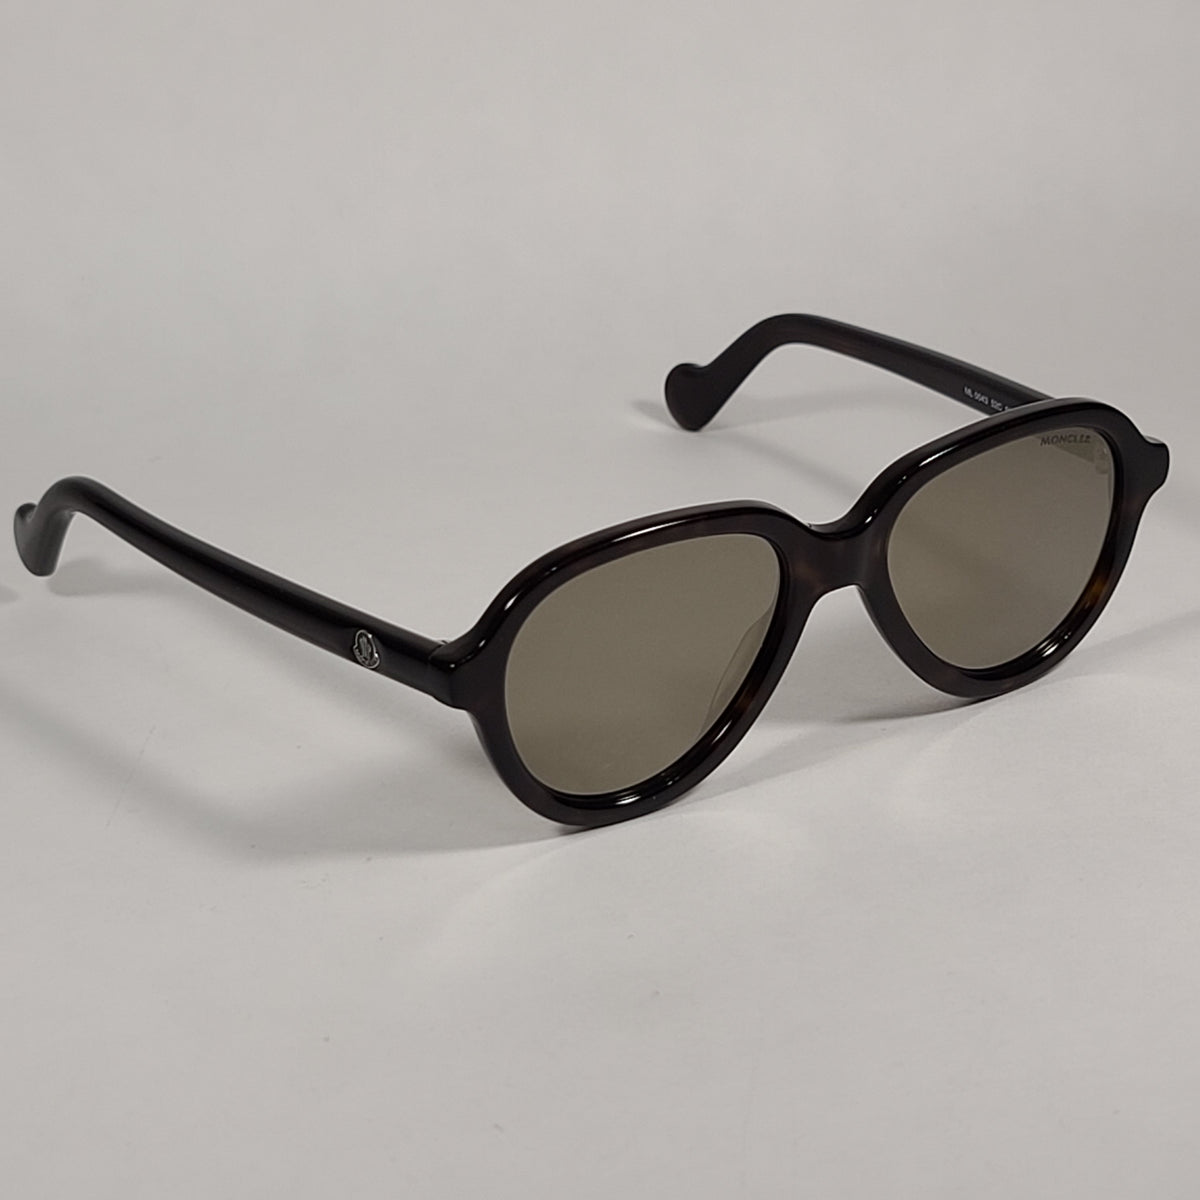 Moncler Aviator Sunglasses Dark Havana Brown Frame Gold Tint Lens ML00